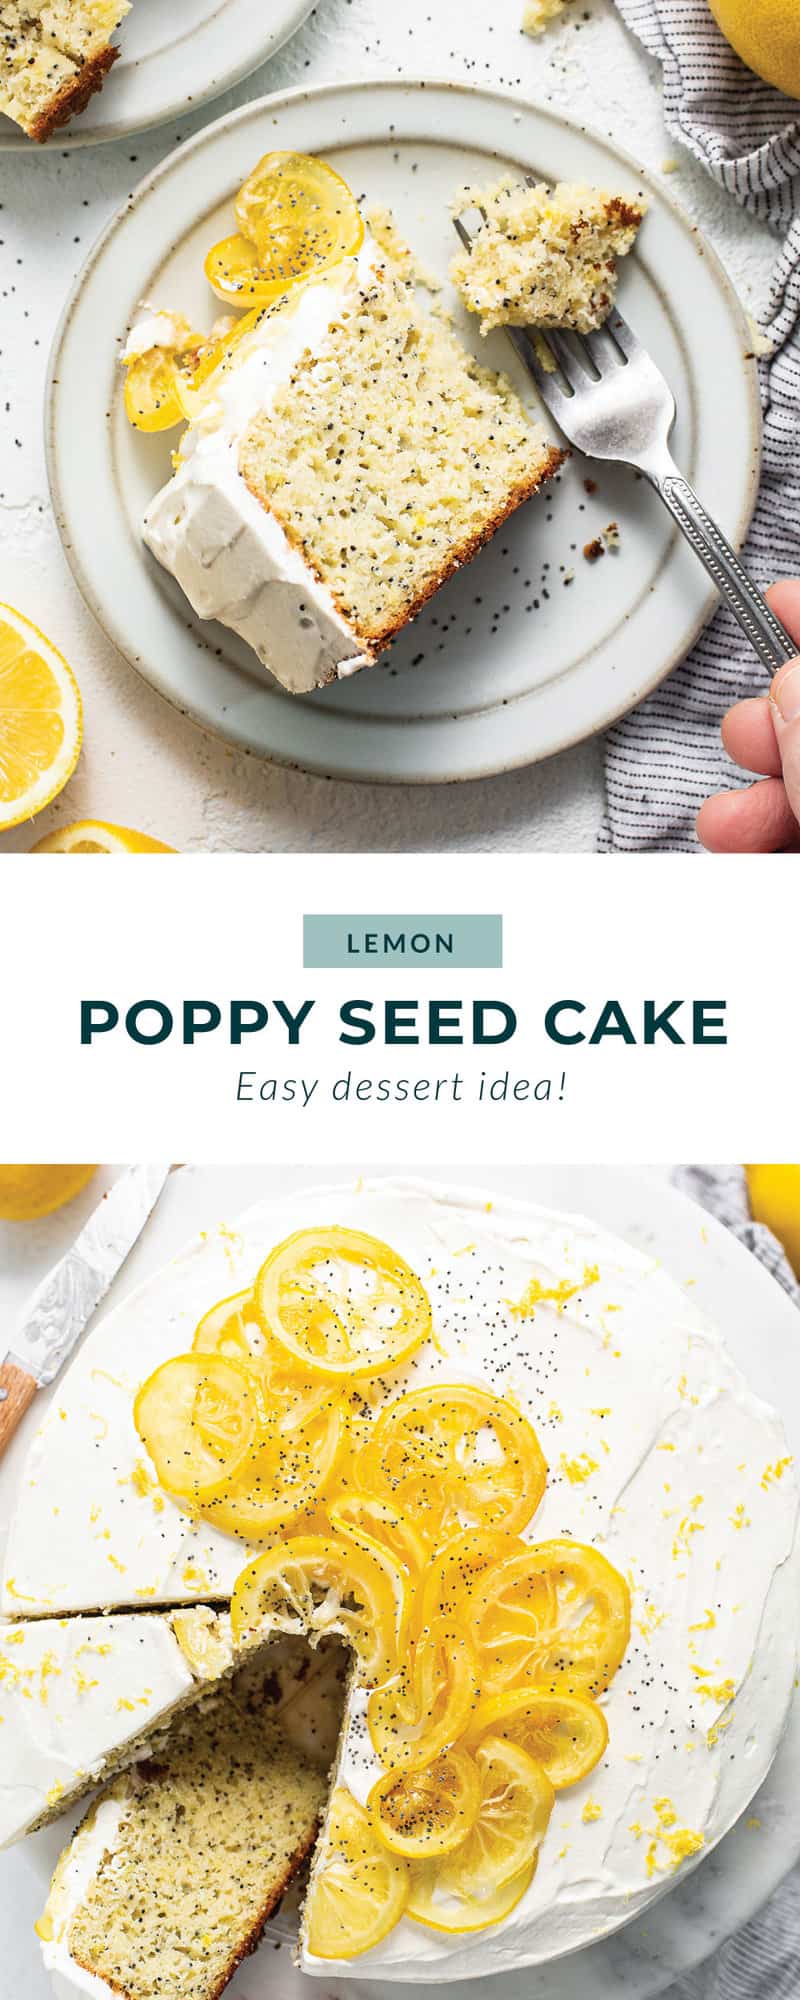 Lemon poppy seed cake.